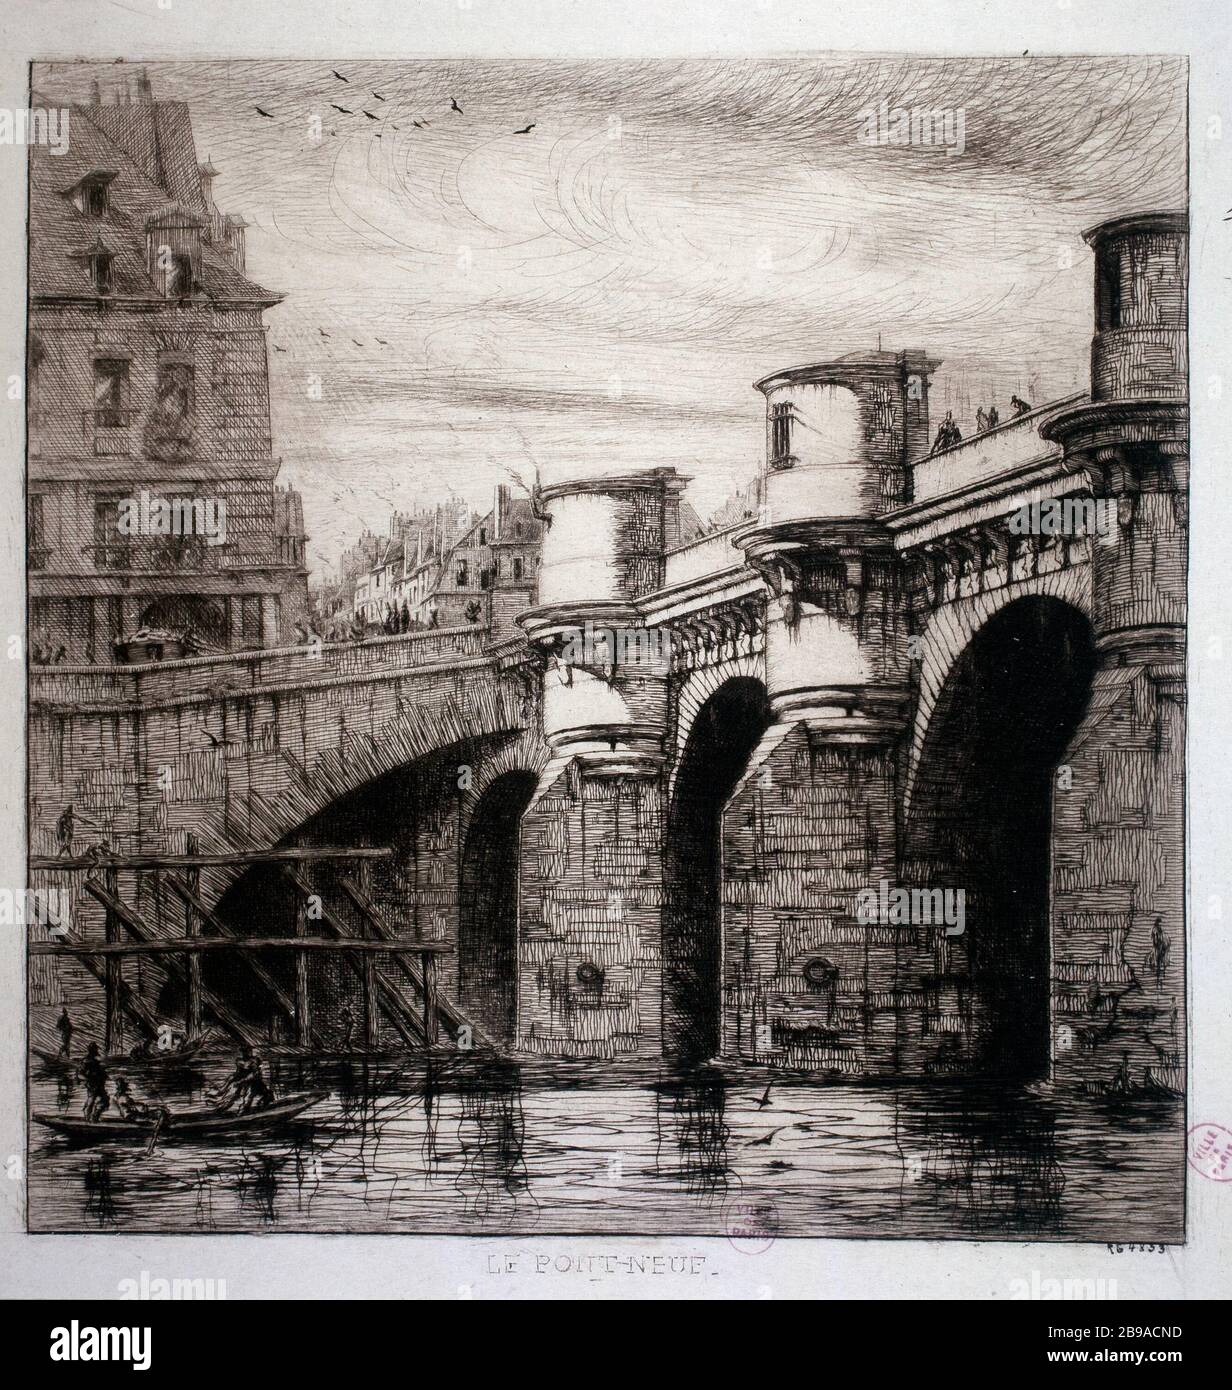 DIE NEUE BRÜCKE Charles Meryon (1821-1868). "Le Pont Neuf". Eau-forte. Paris, musée Carnavalet. Stockfoto